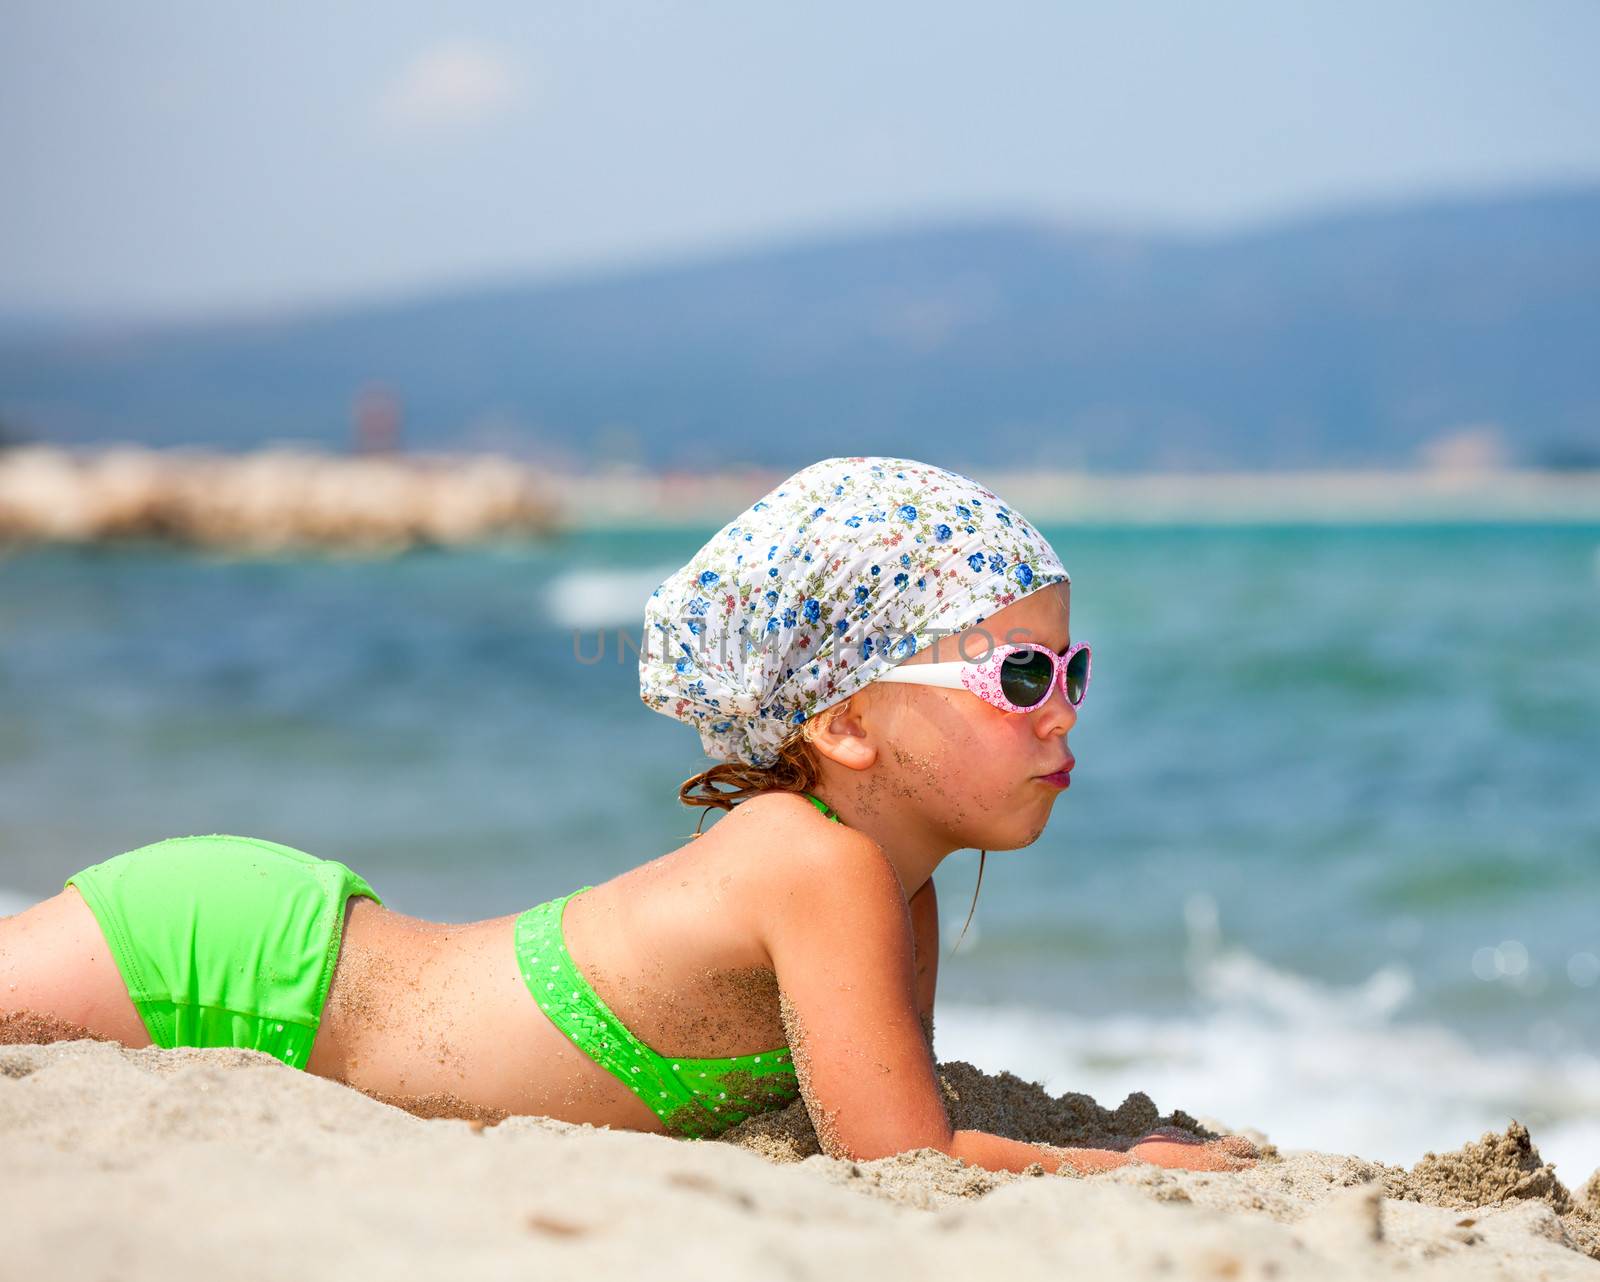 Little girl enjoying summer day on a beach